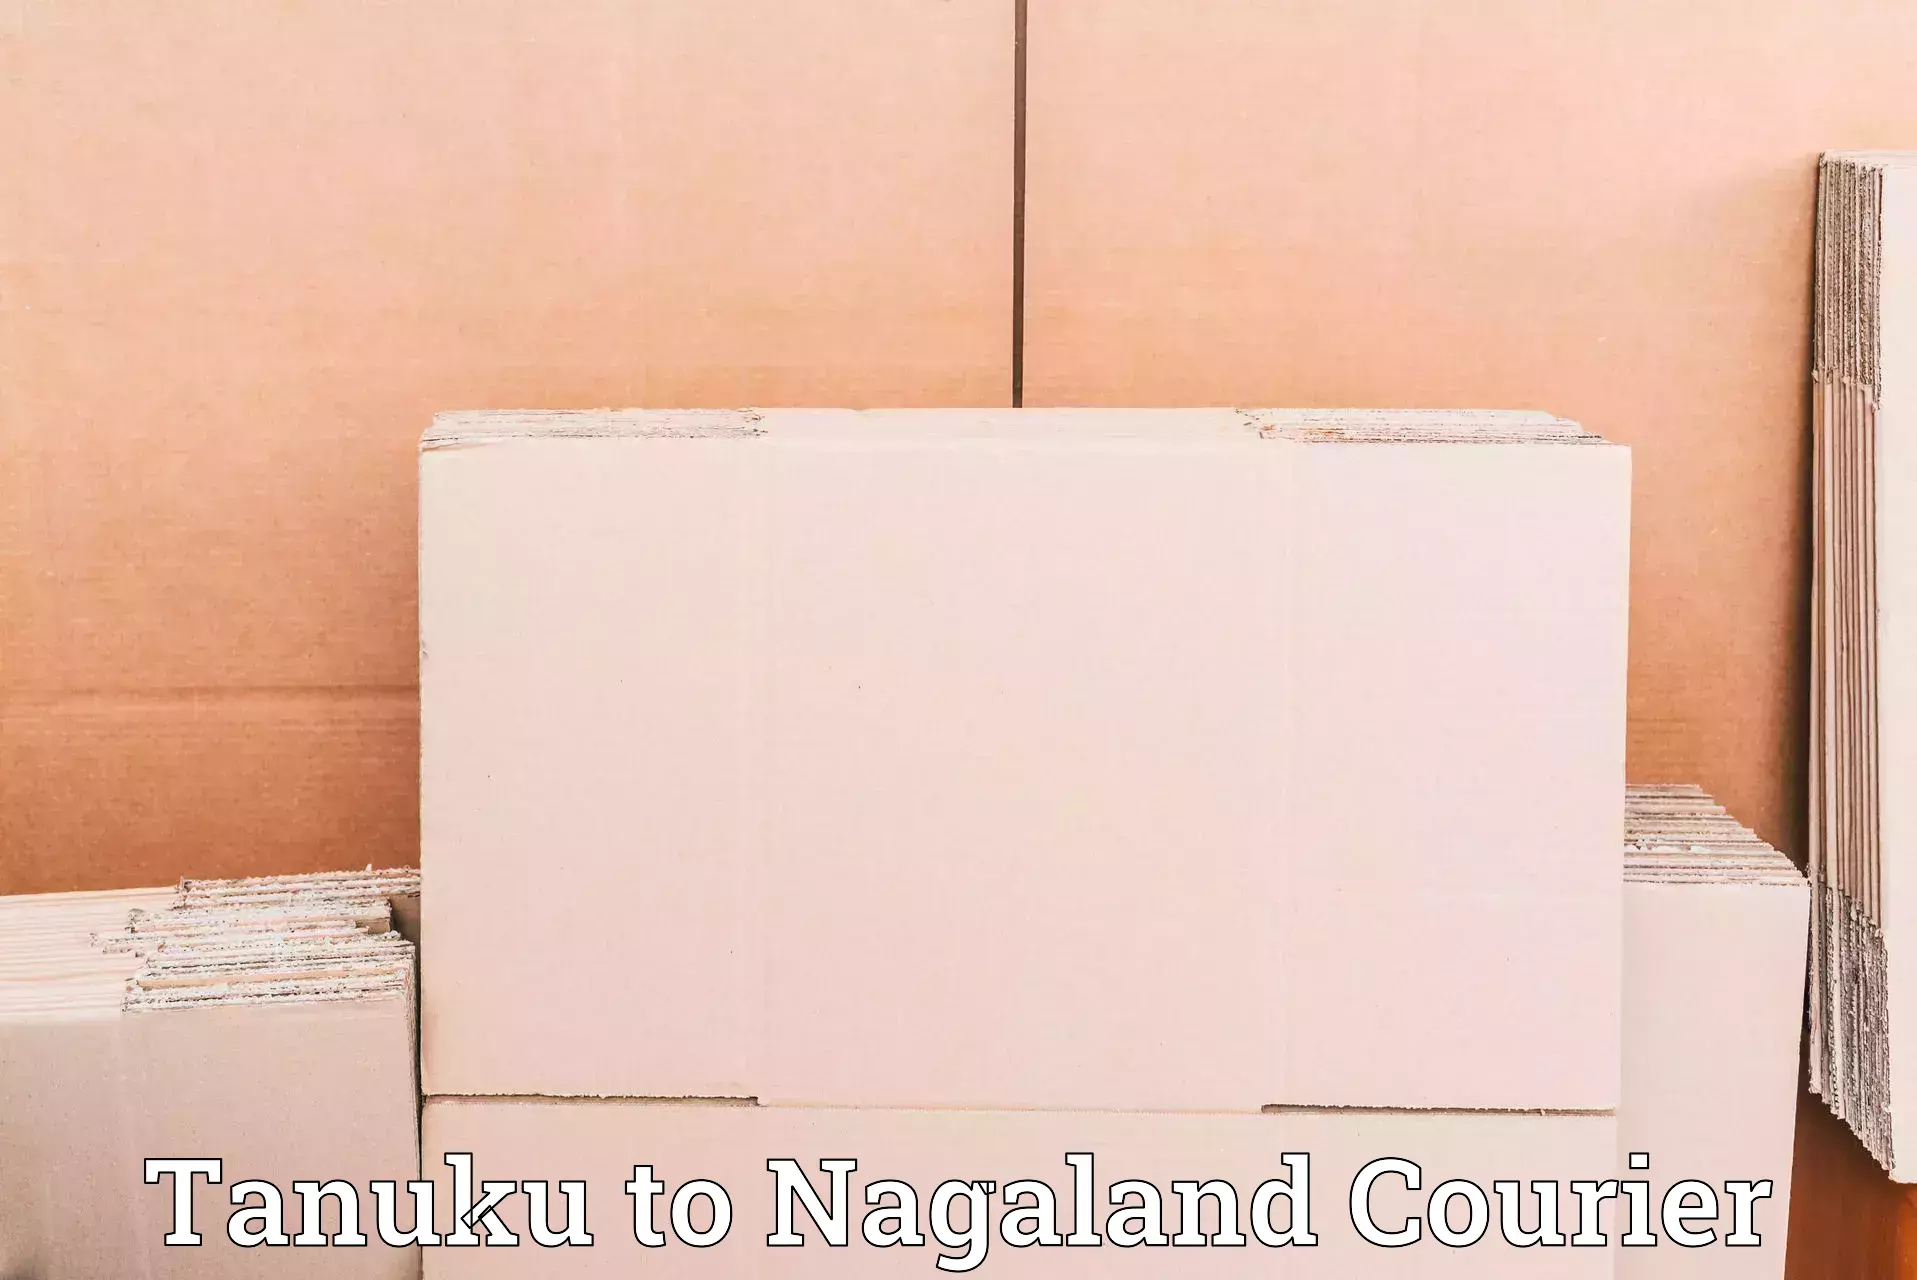 Global logistics network Tanuku to Nagaland